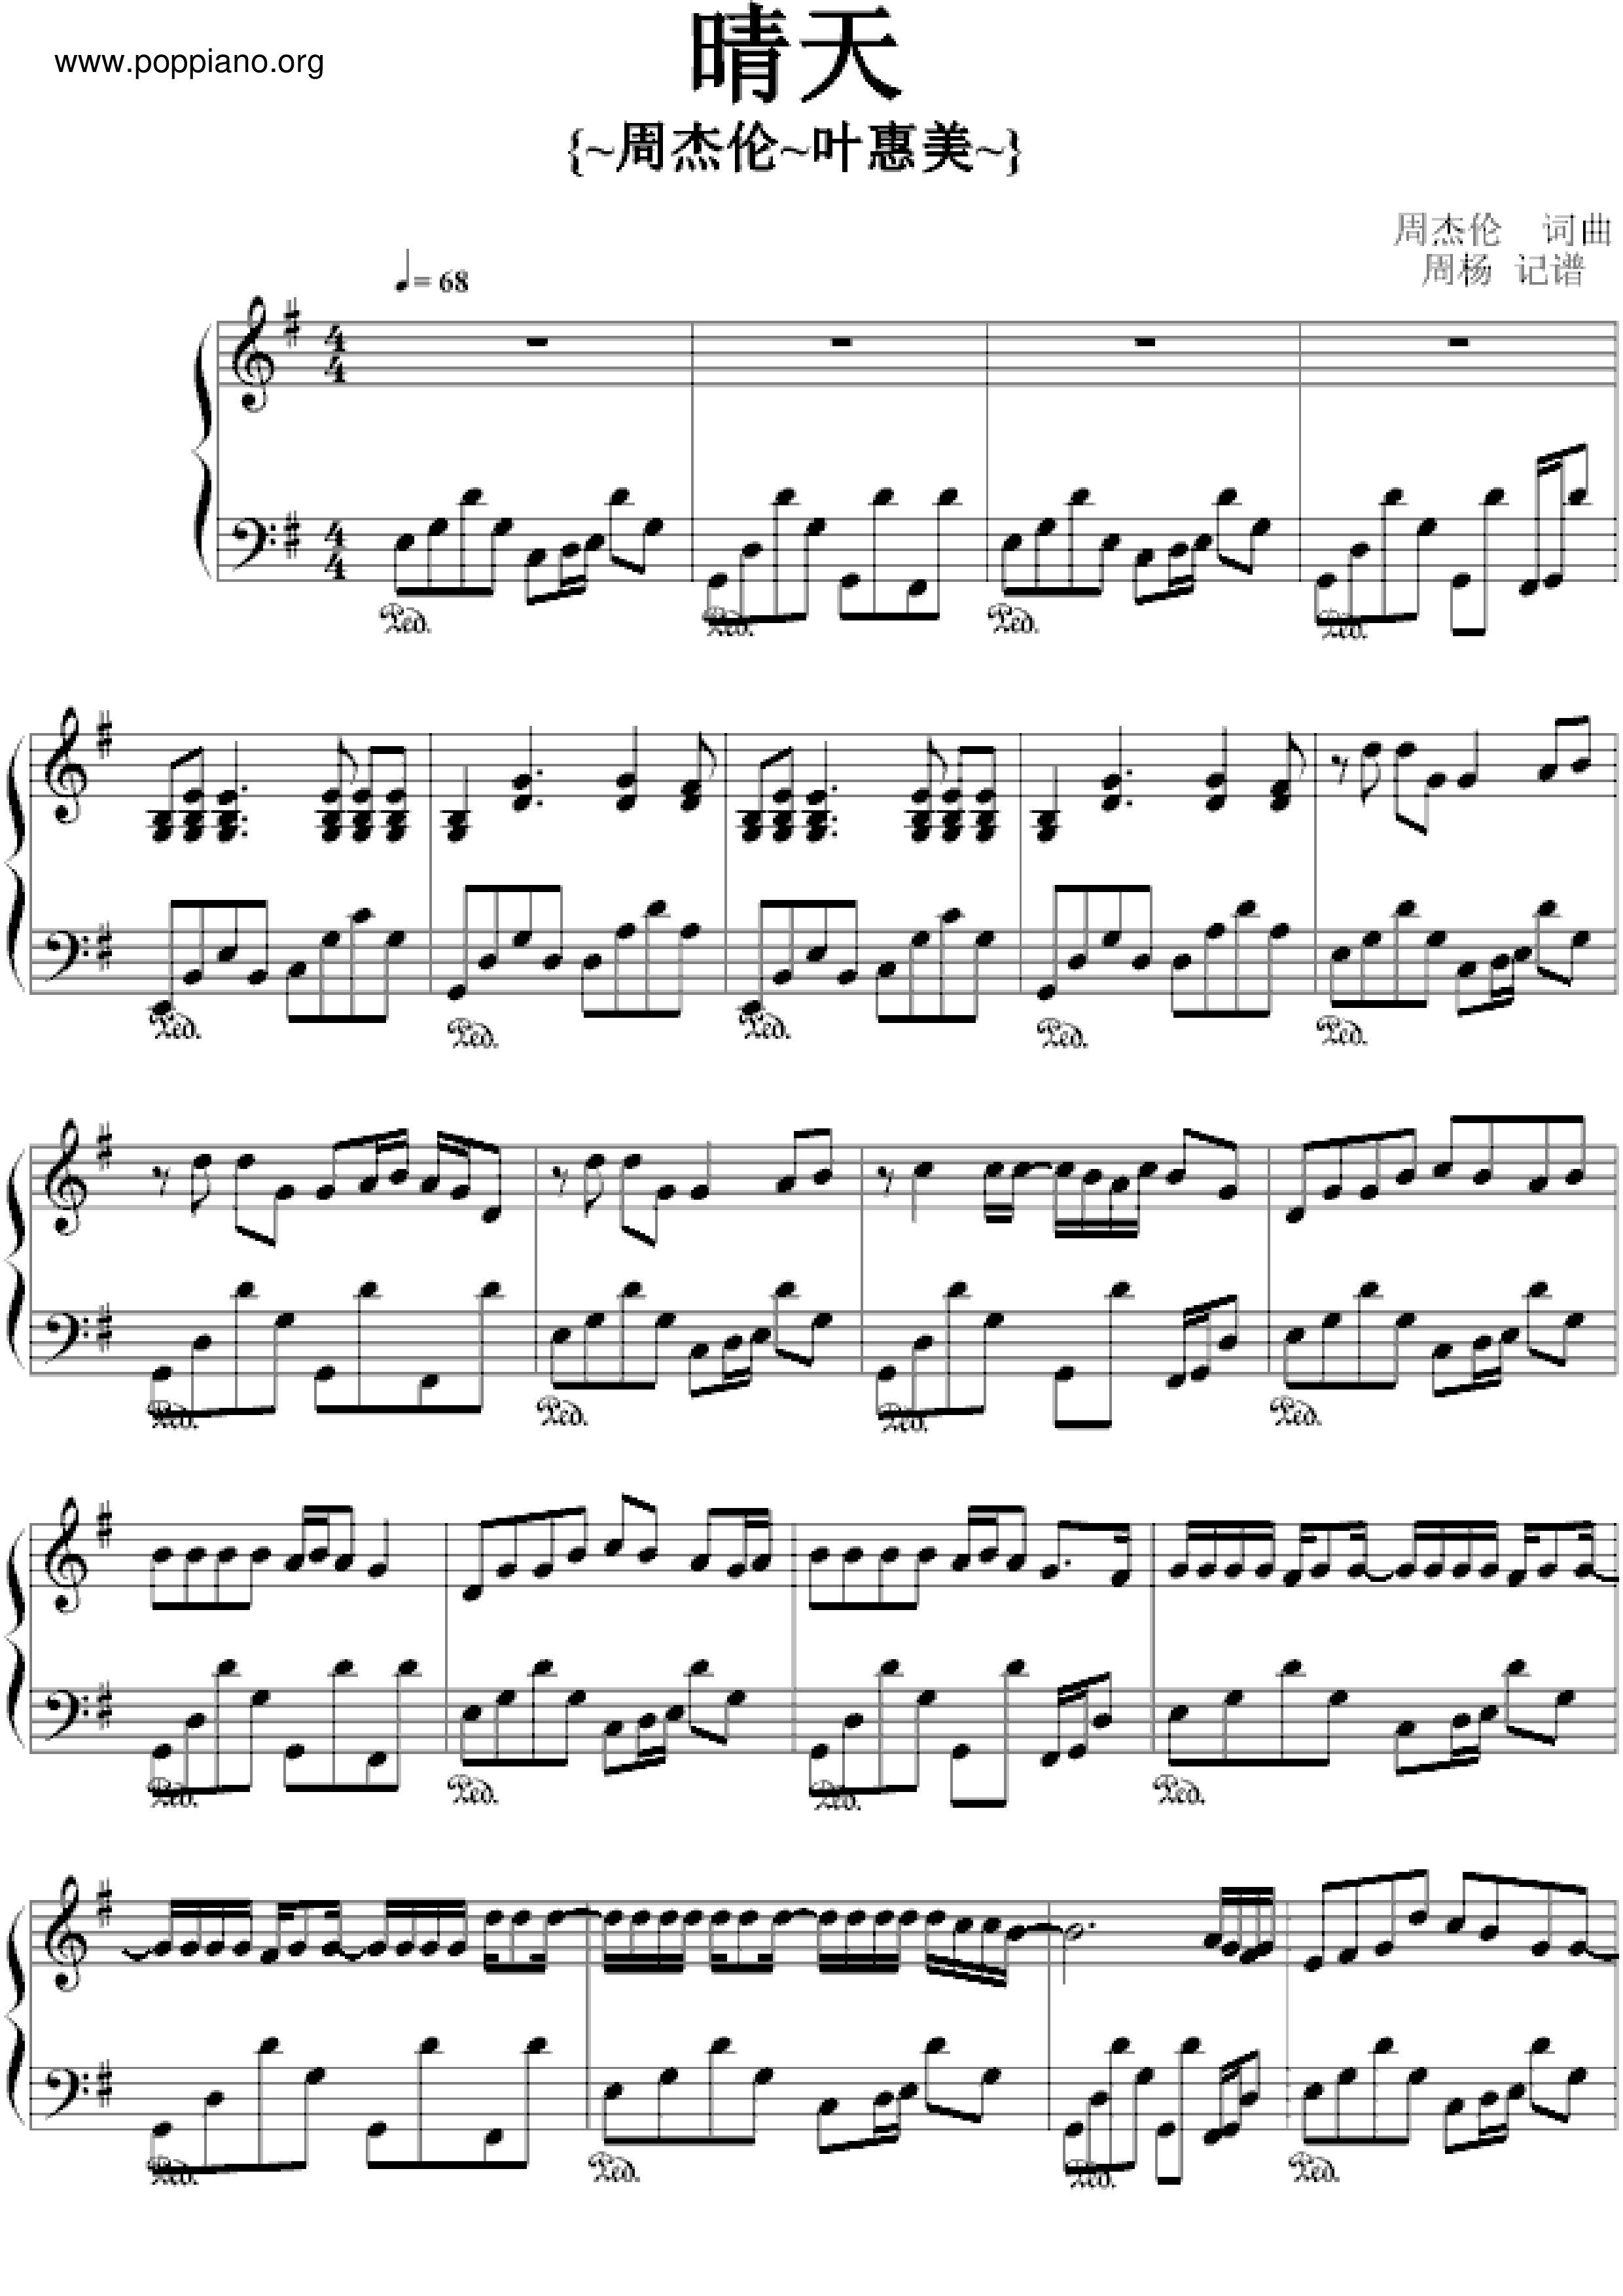 周杰伦-晴天 琴谱/五线谱pdf-流行钢琴协会